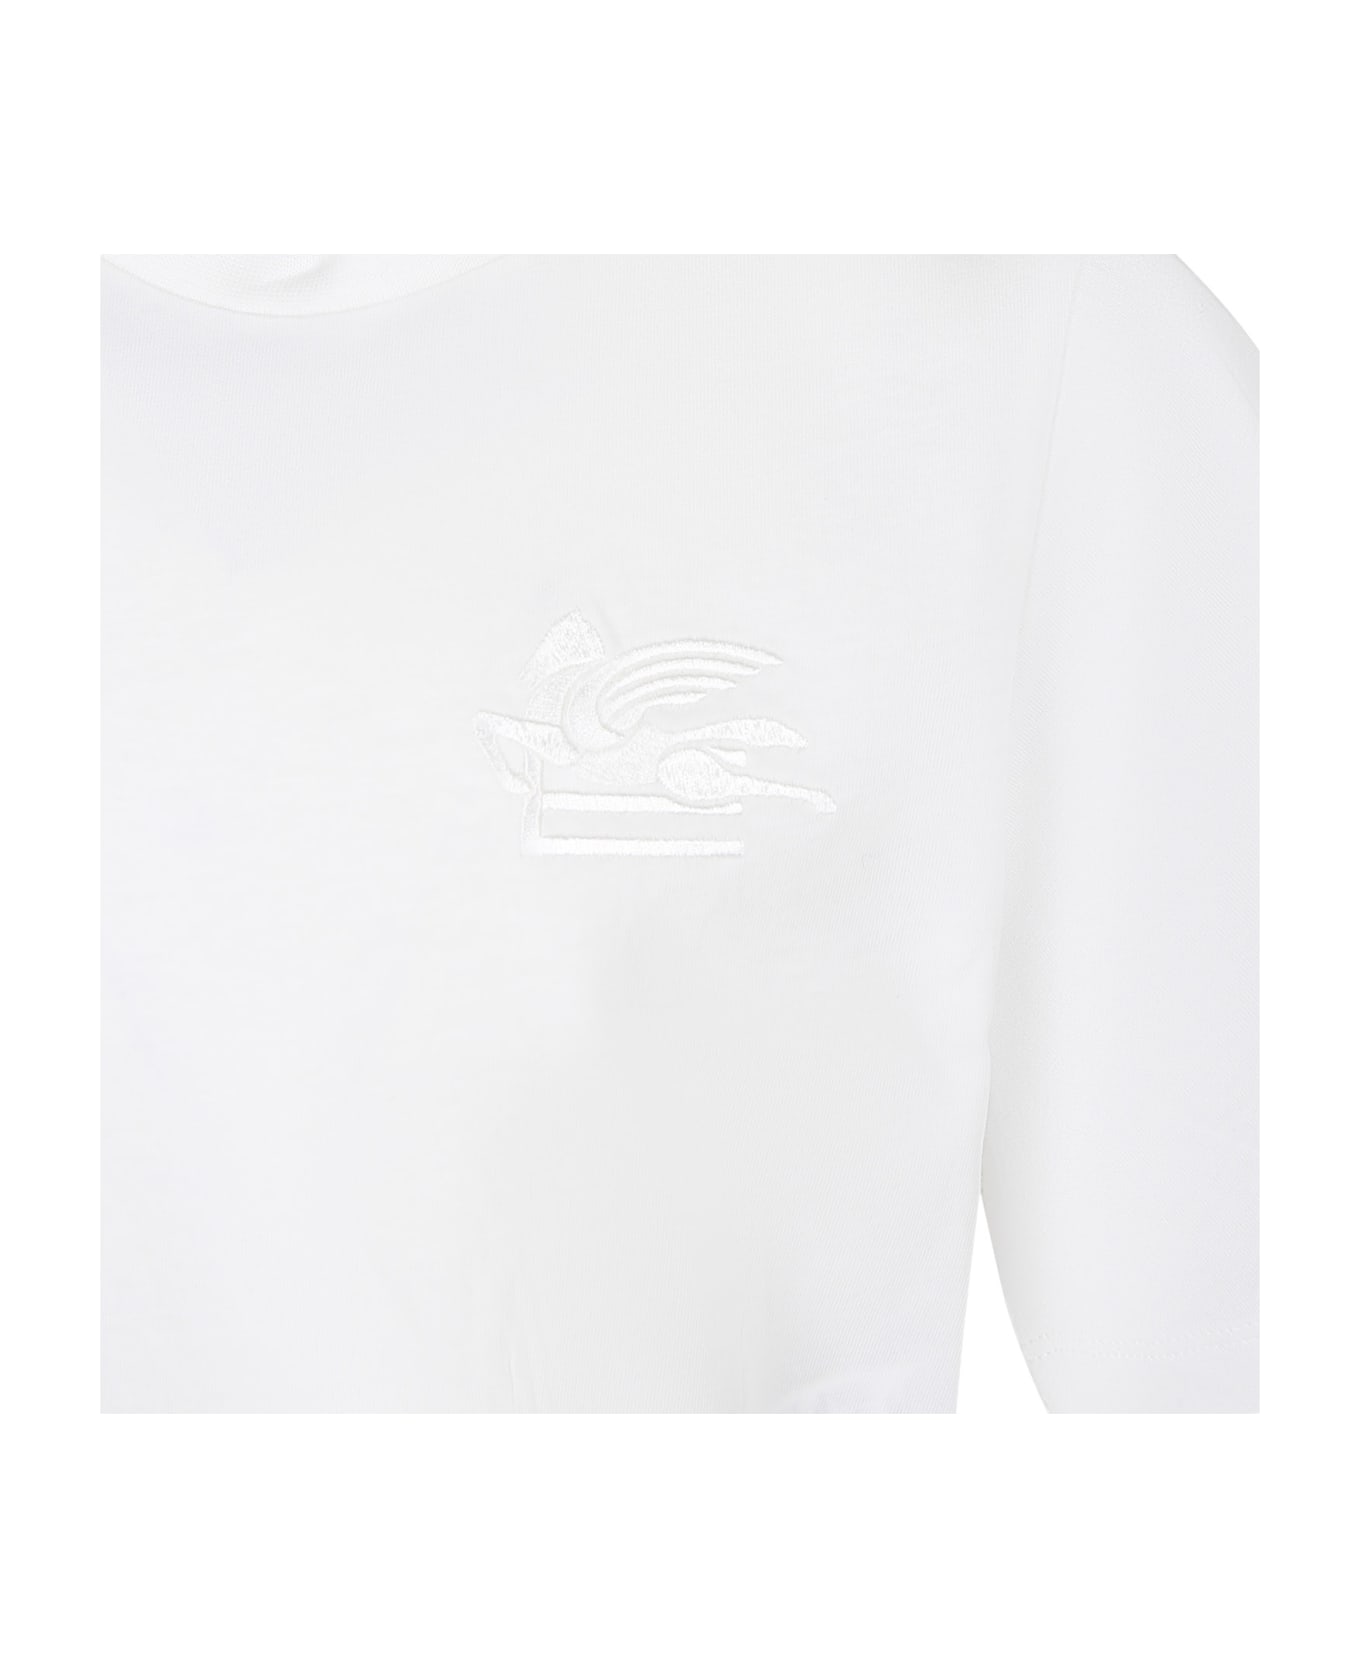 Etro White T-shirt For Girl With Logo - White